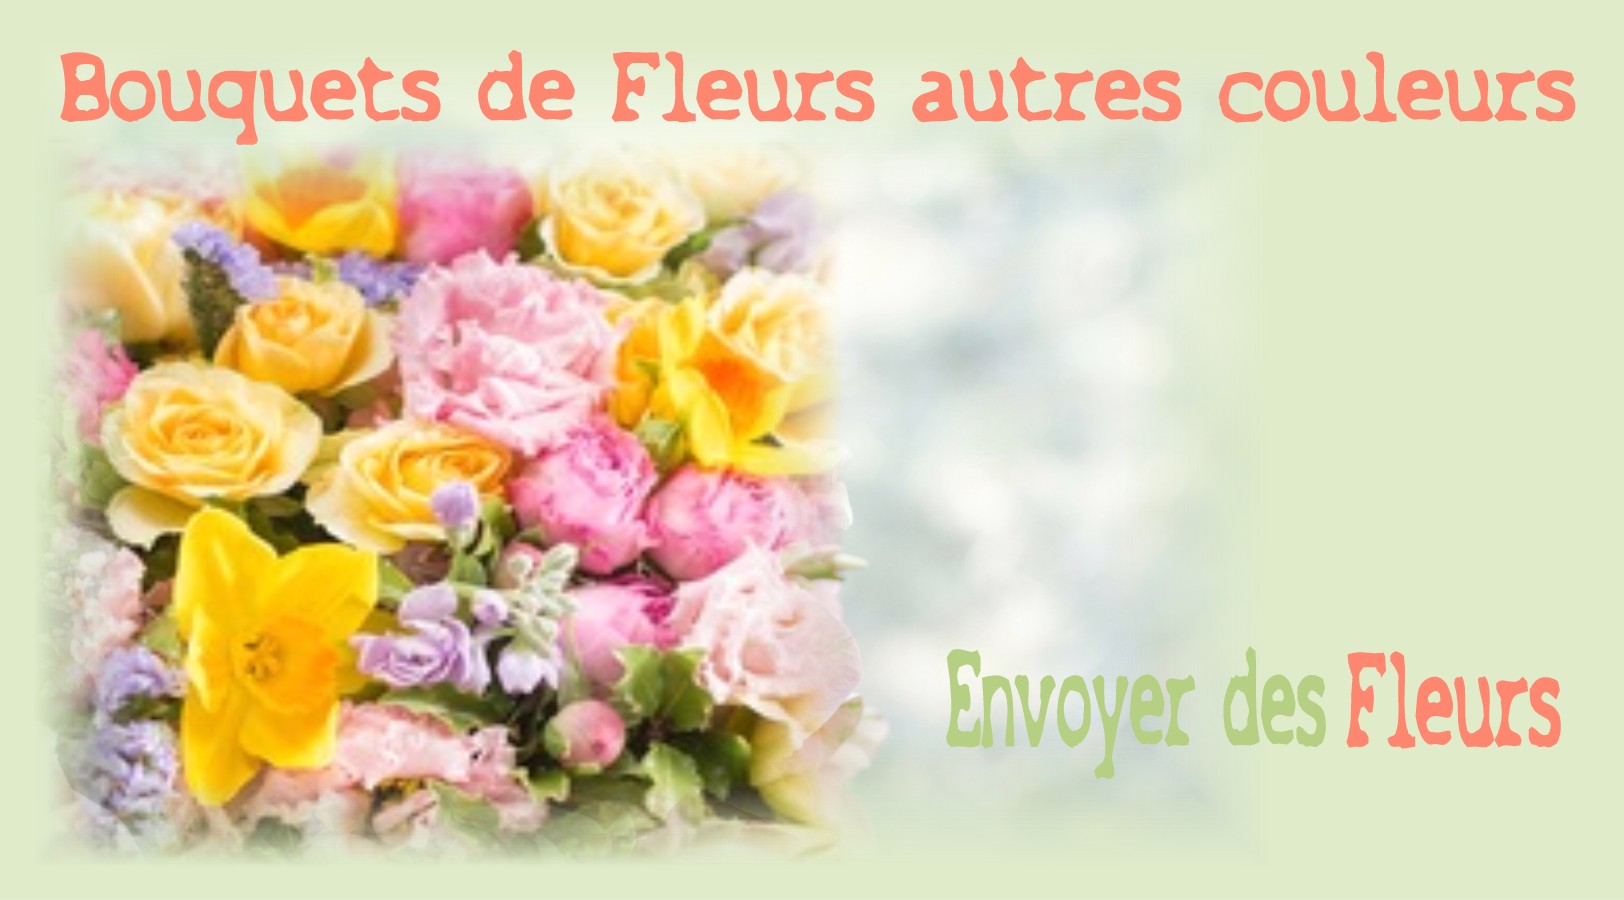 BOUQUETS DE FLEURS AUTRES COULEURS - FLEURISTE NANTES (44) - ENVOYER DES FLEURS